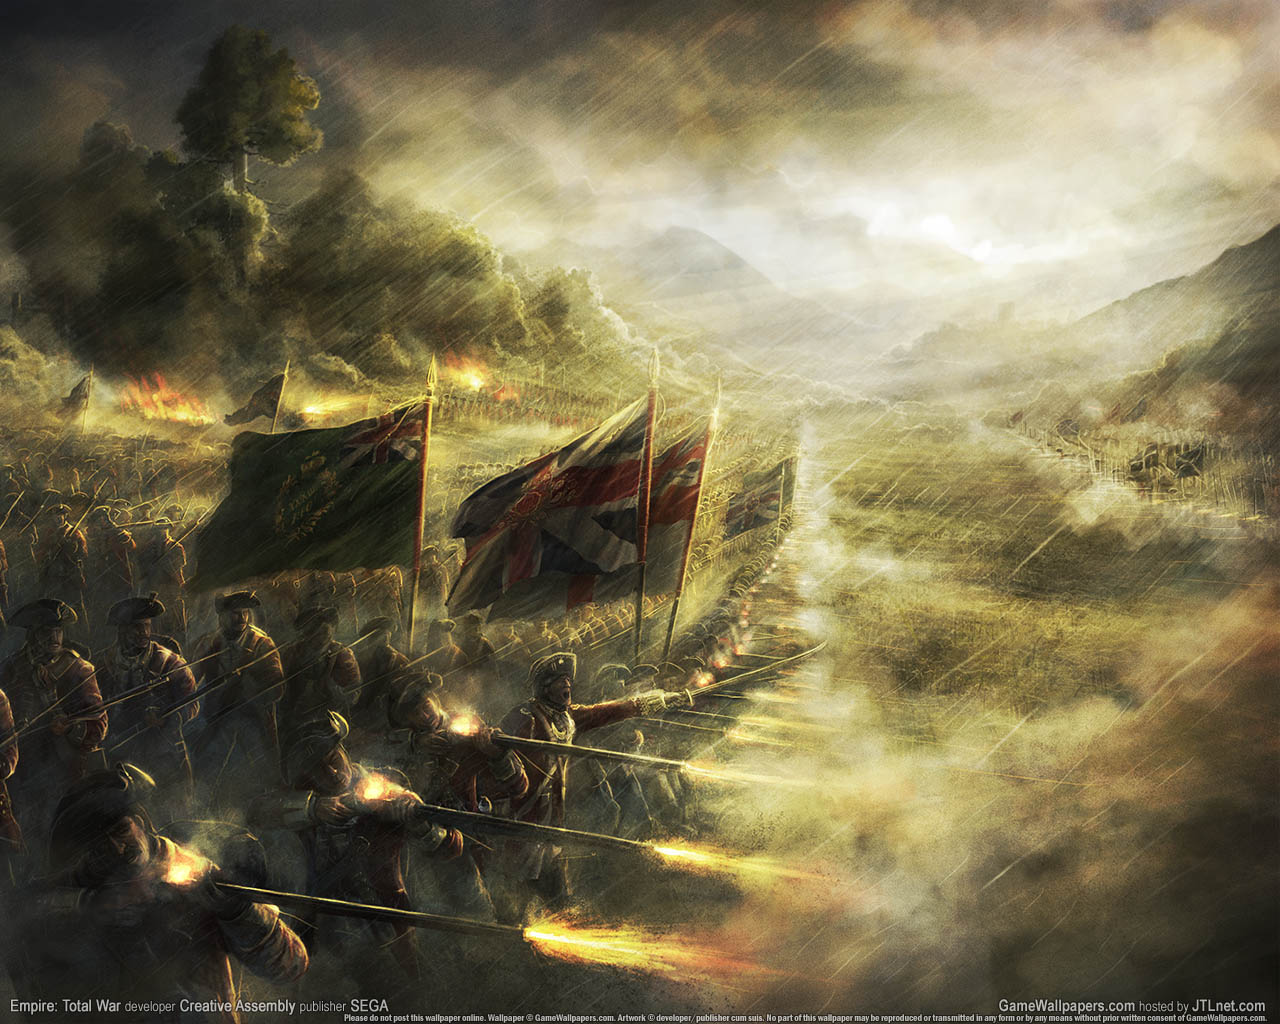 Empire: Total War fond d'cran 08 1280x1024